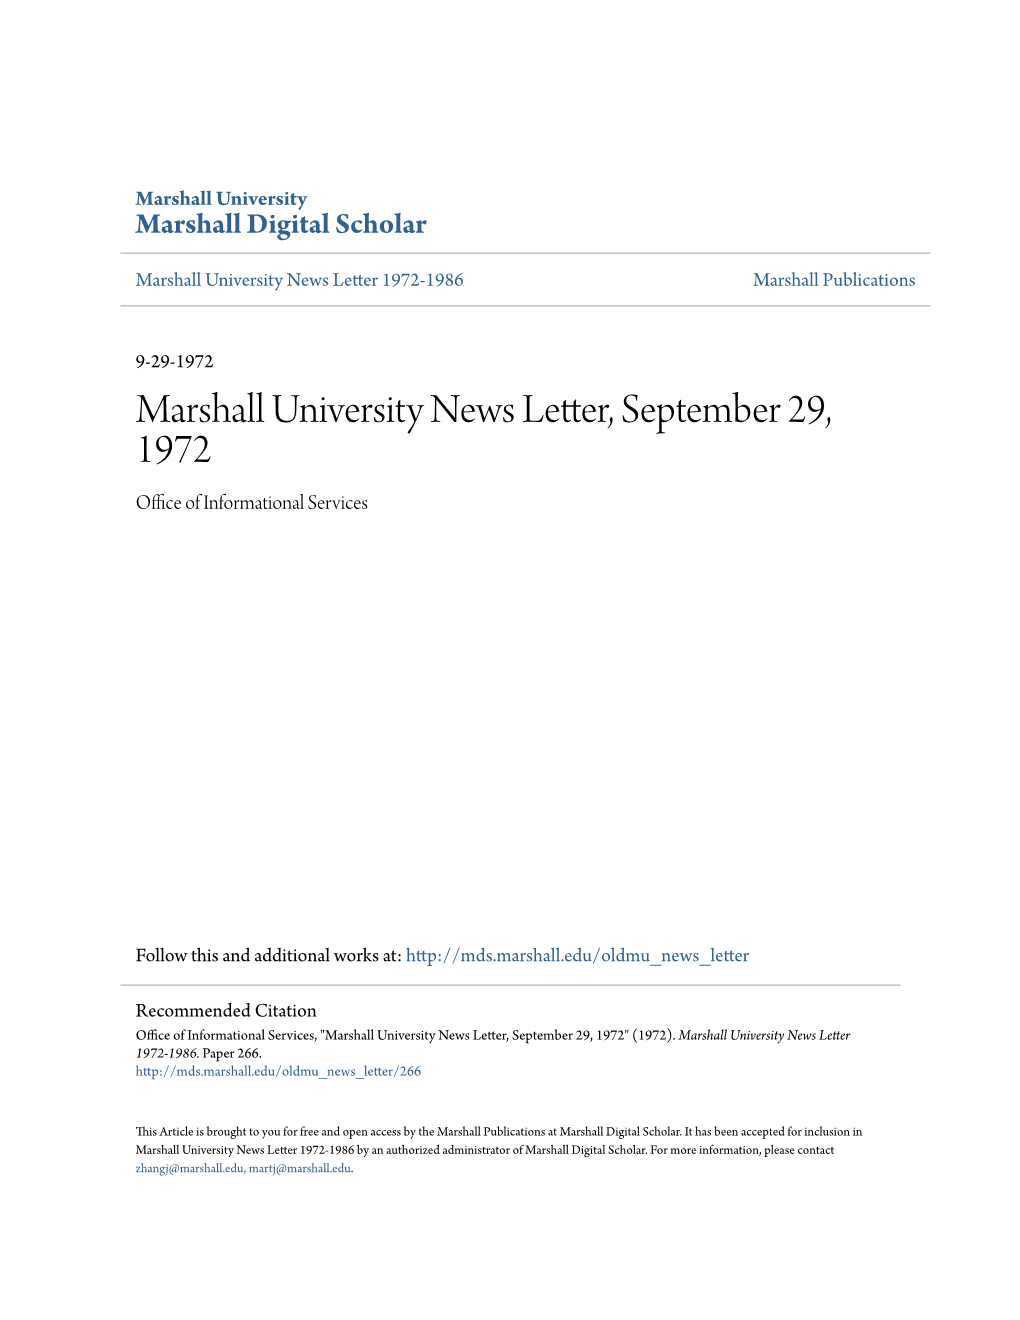 Marshall University News Letter, September 29, 1972 Office Ofnfor I Mational Services